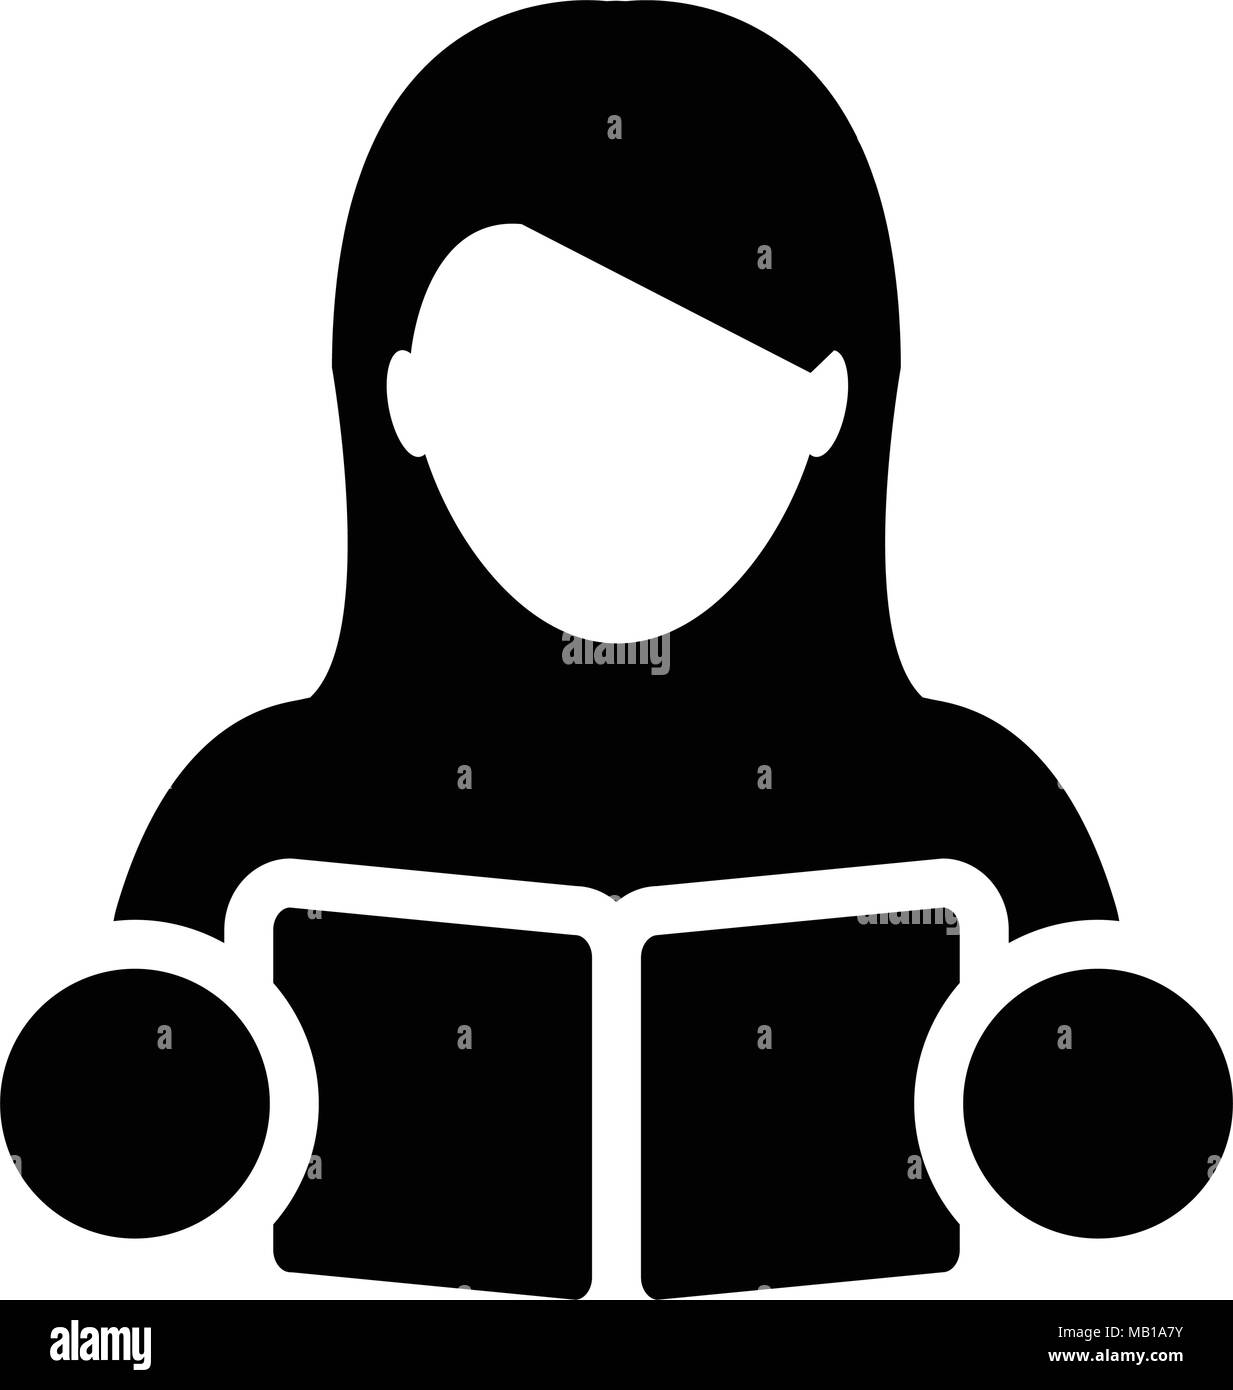 Buchen Sie Symbol Vektor mit weiblichen Kursteilnehmer oder Lehrer Person Profil Avatar für Schule, Hochschule und Universität Bildung in Glyph Piktogramm Abbildung Stock Vektor